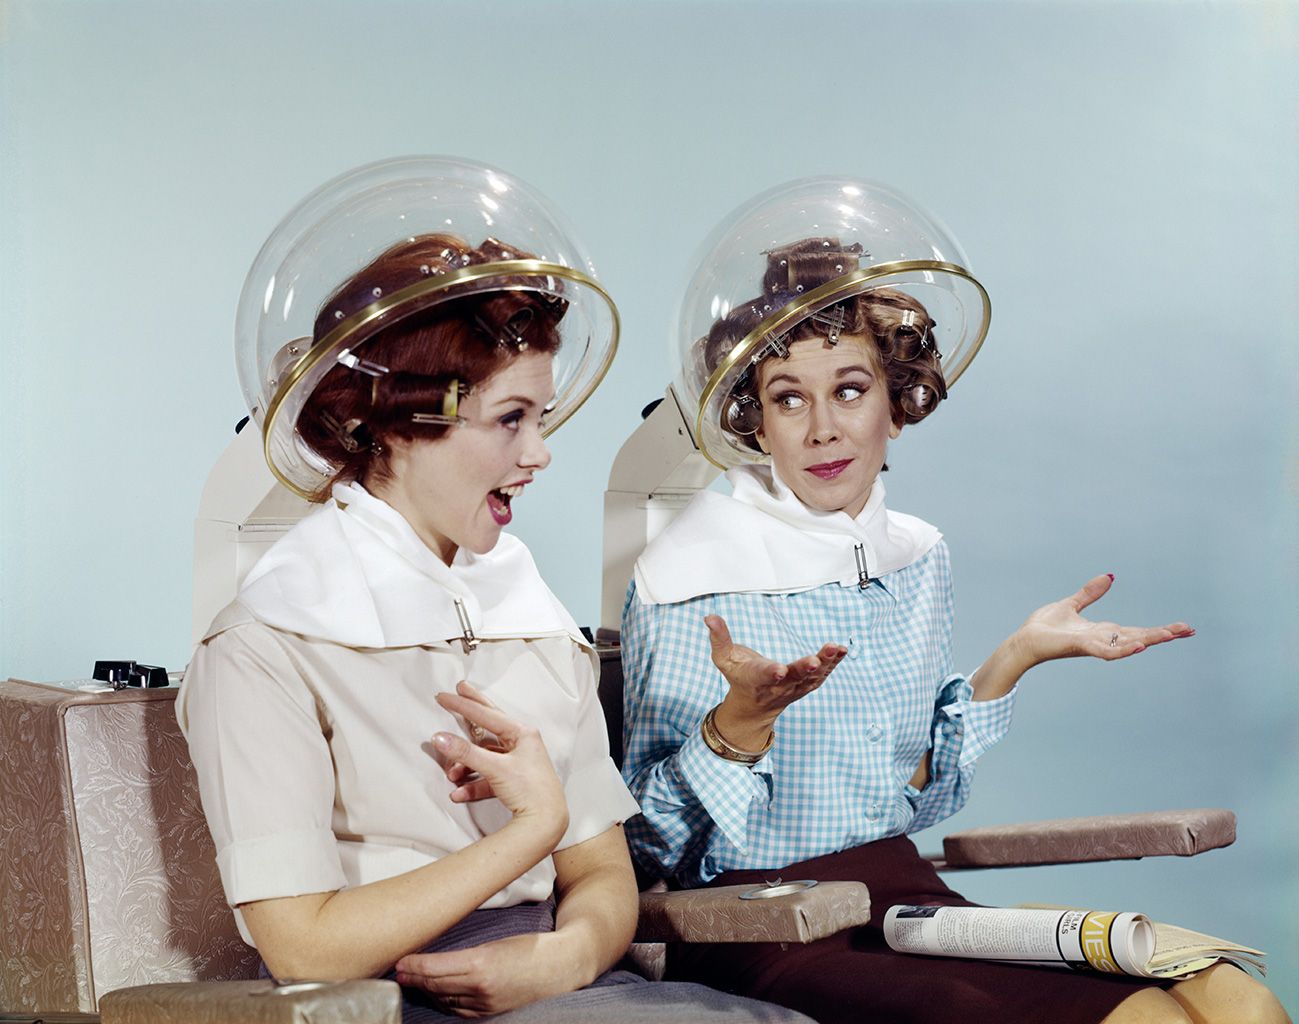 Mujeres en un secador de pelo. Foto vintage.